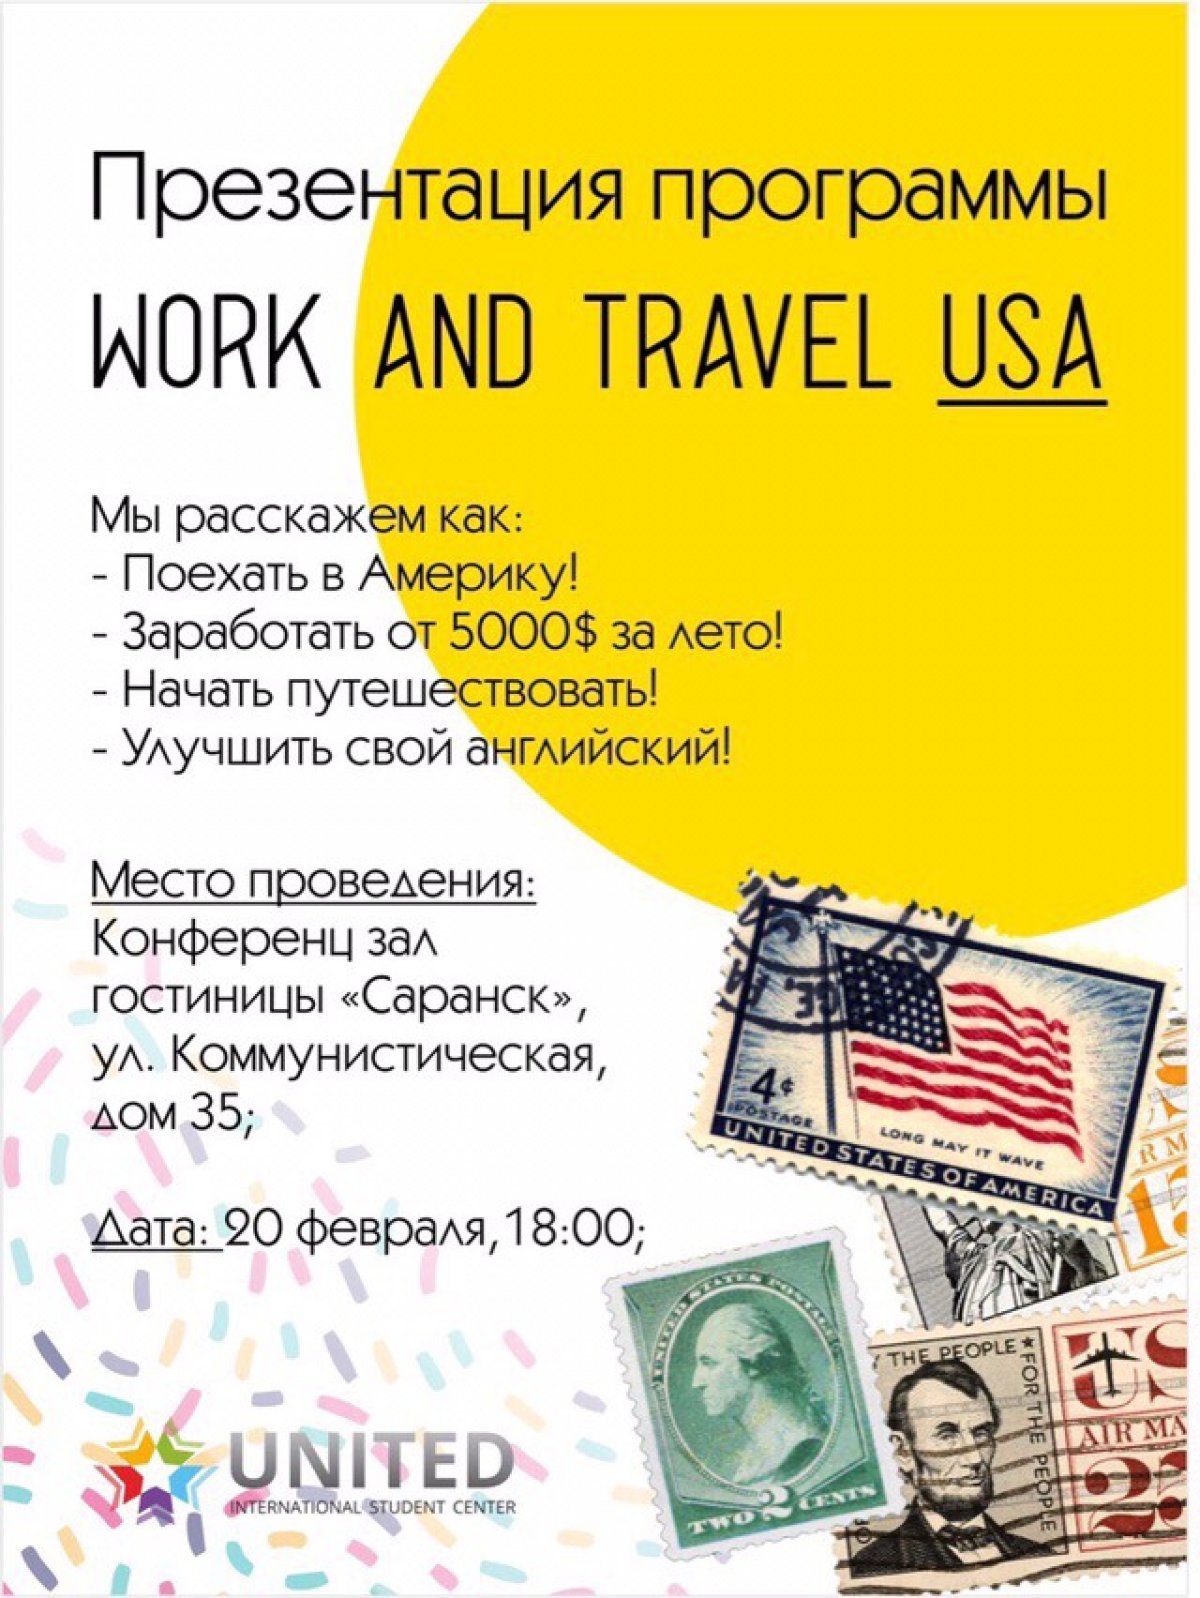 Приглашаем тебя и всех-всех твоих друзей на презентацию программы Work&Travel 2019 от https://vk.com/iscunited_ulyanovsk! 🇺🇸🏝✈🗺